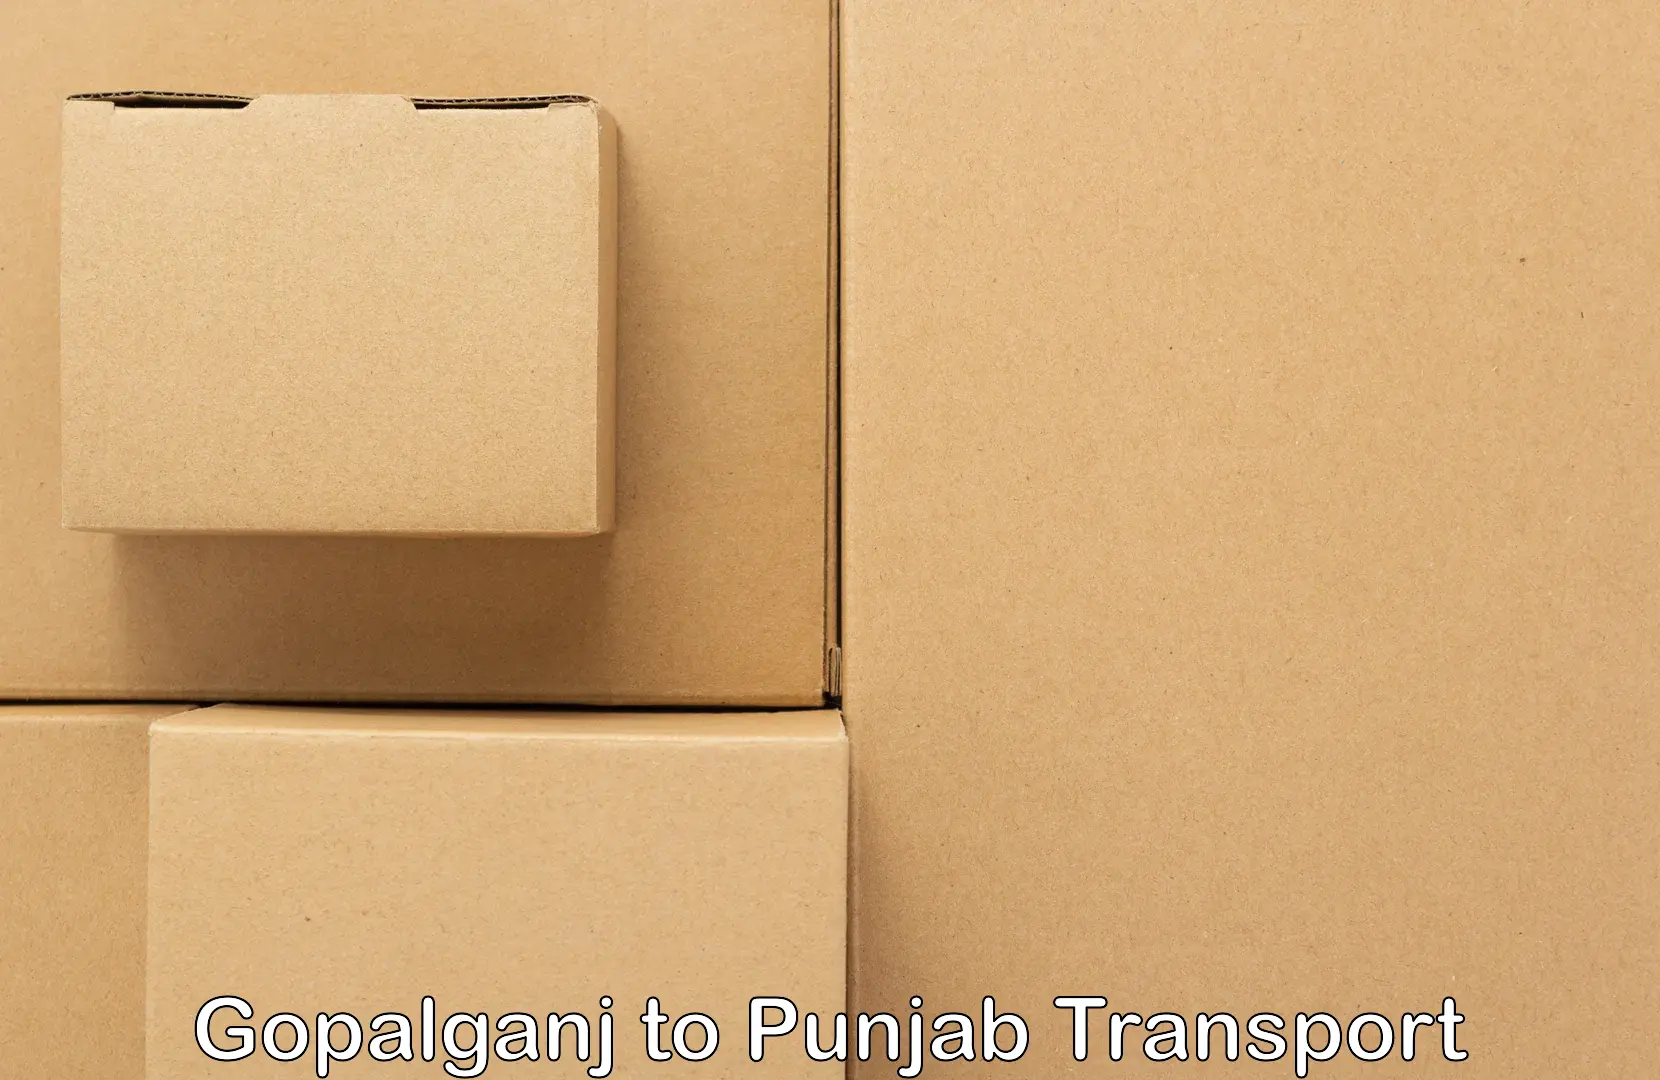 Shipping partner Gopalganj to Dhilwan